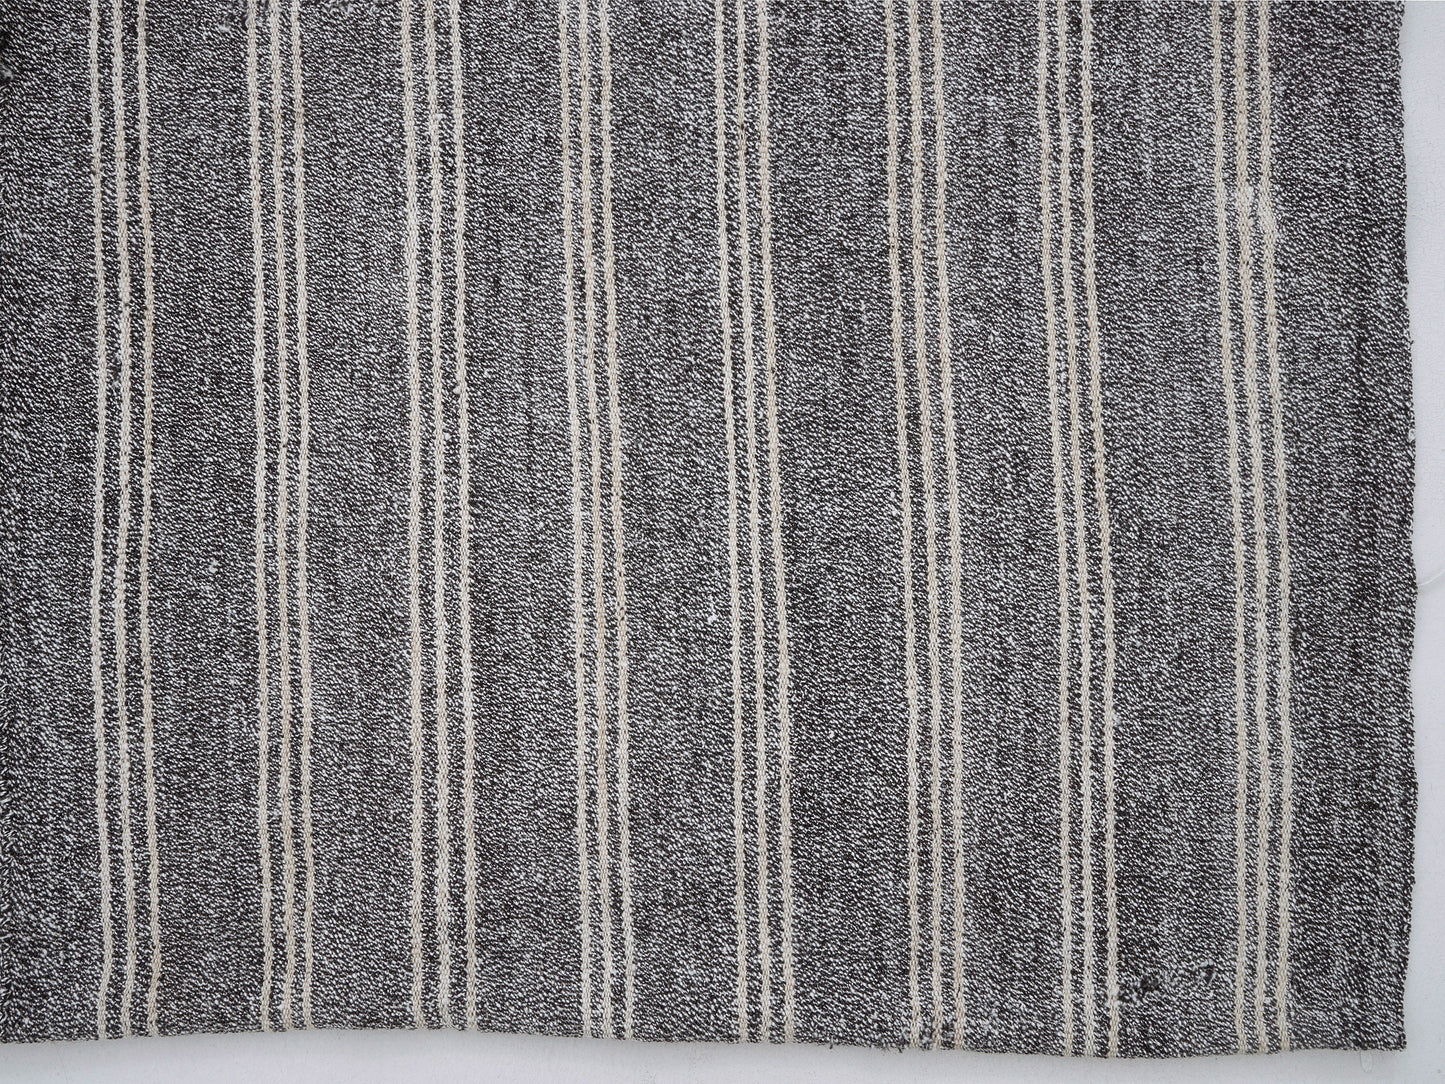 Turkish Vintage Kilim Rug, Handmade Kilim Rug, Bedroom Rug, Area Striped Kilim Rug, Neutral Kilim Rug, Gray Rug, Kilim Rug 6x8, 12182